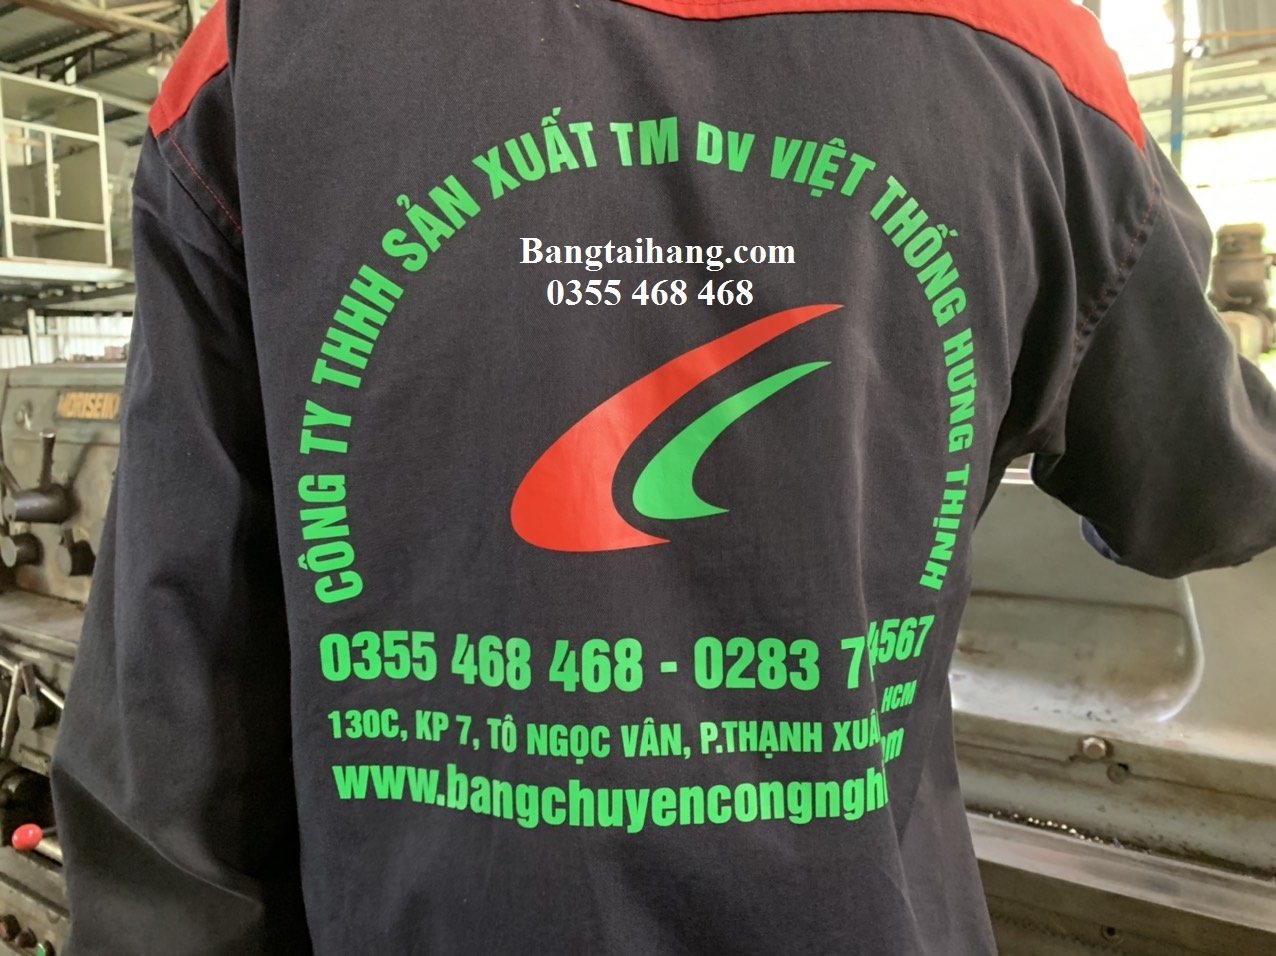 Băng chuyền uy tín, chất lượng cao tại Việt Thống